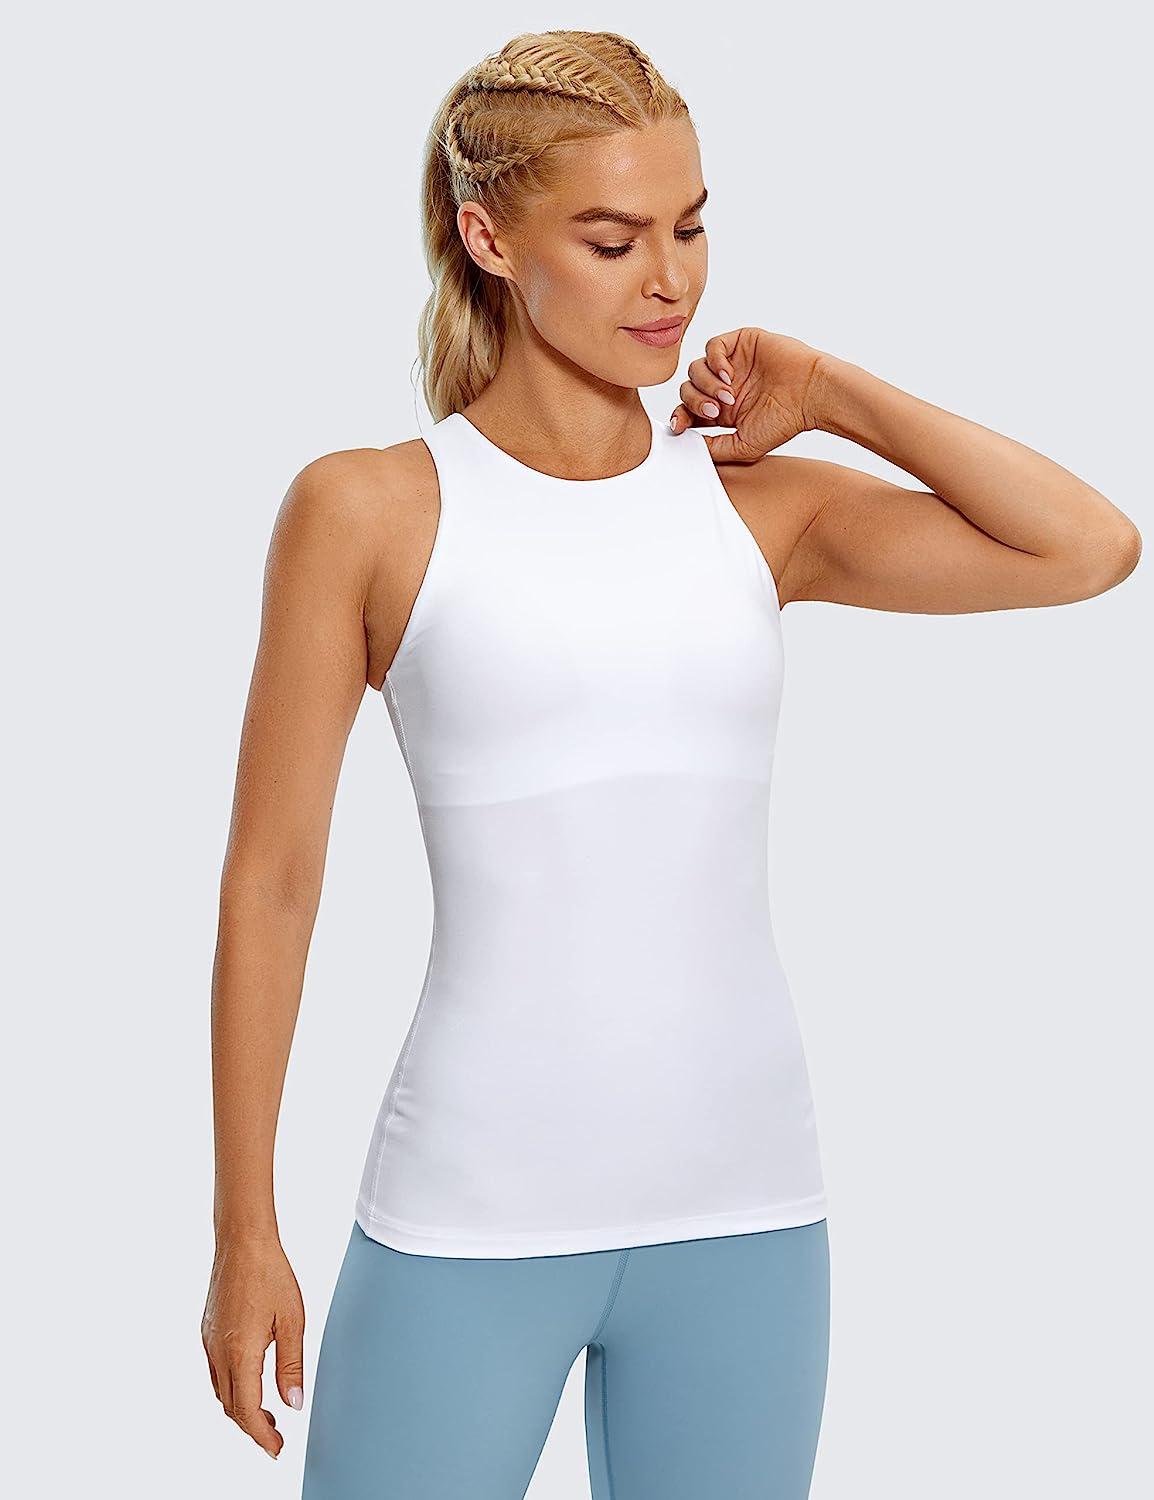 CRZ YOGA Women's Workout Sleeveless Shirts Round Neck Yoga